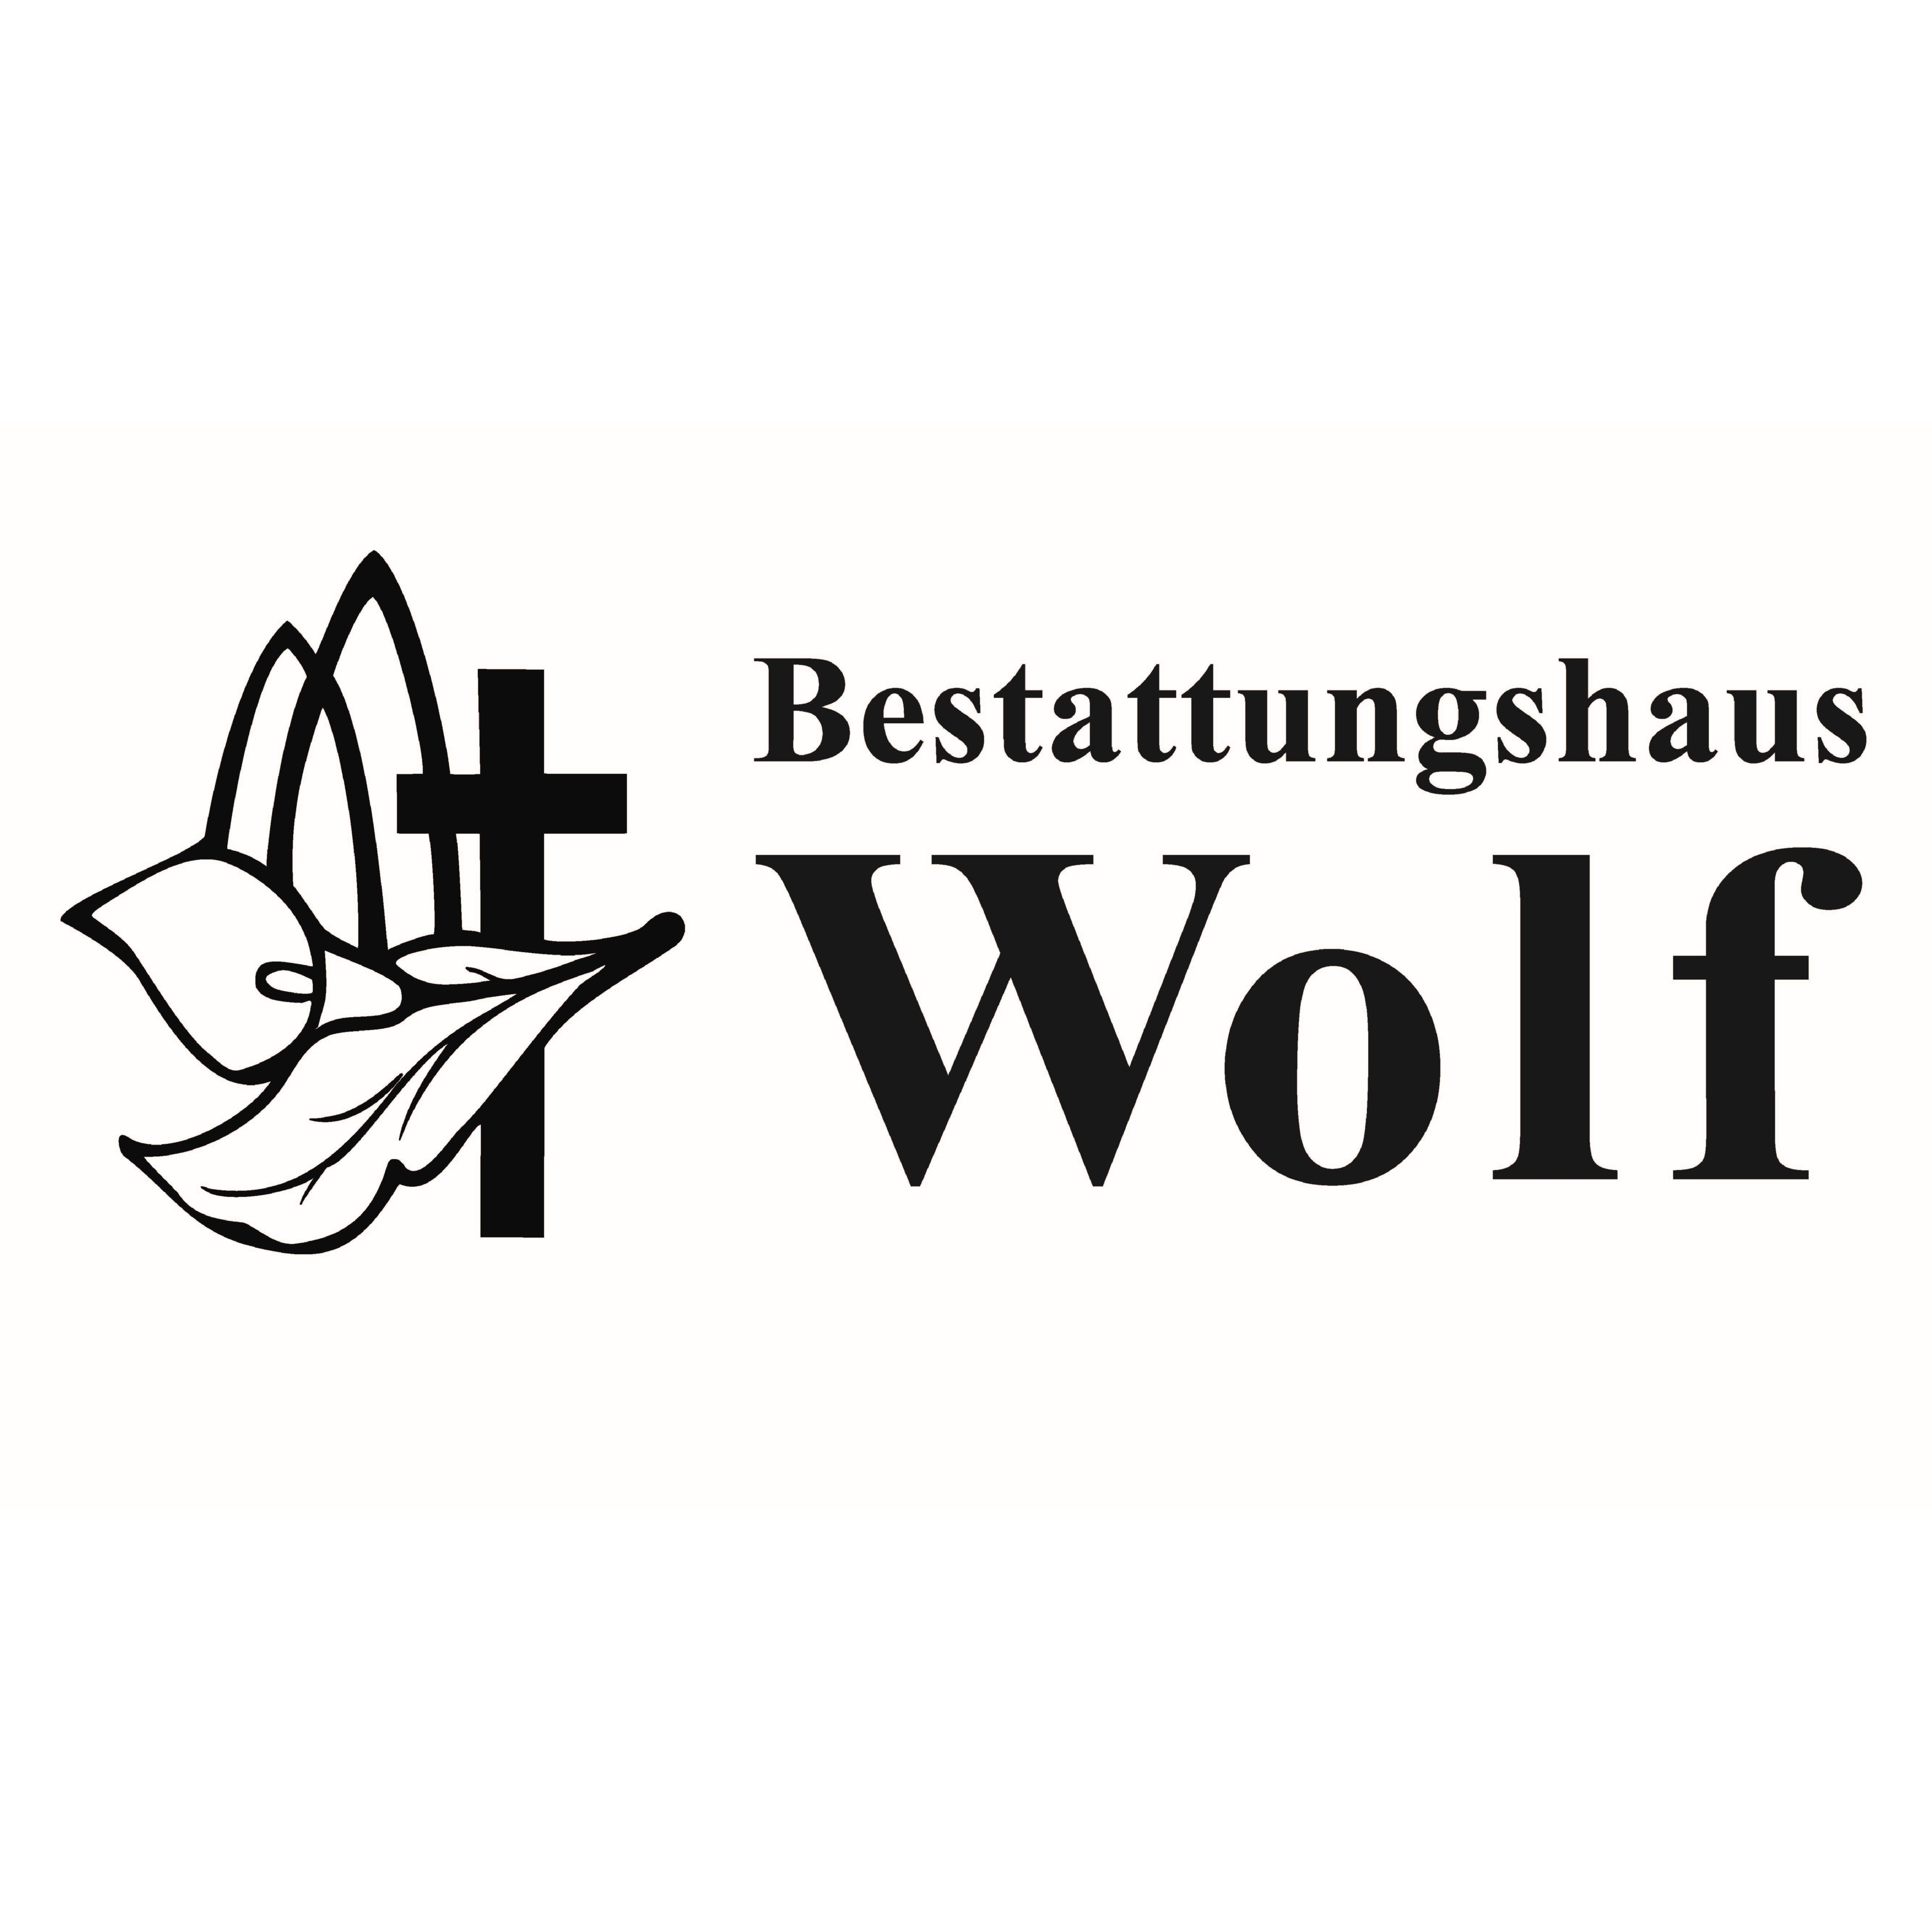 Bestattungshaus Wolf in Günthersleben Wechmar Gemeinde Drei Gleichen - Logo